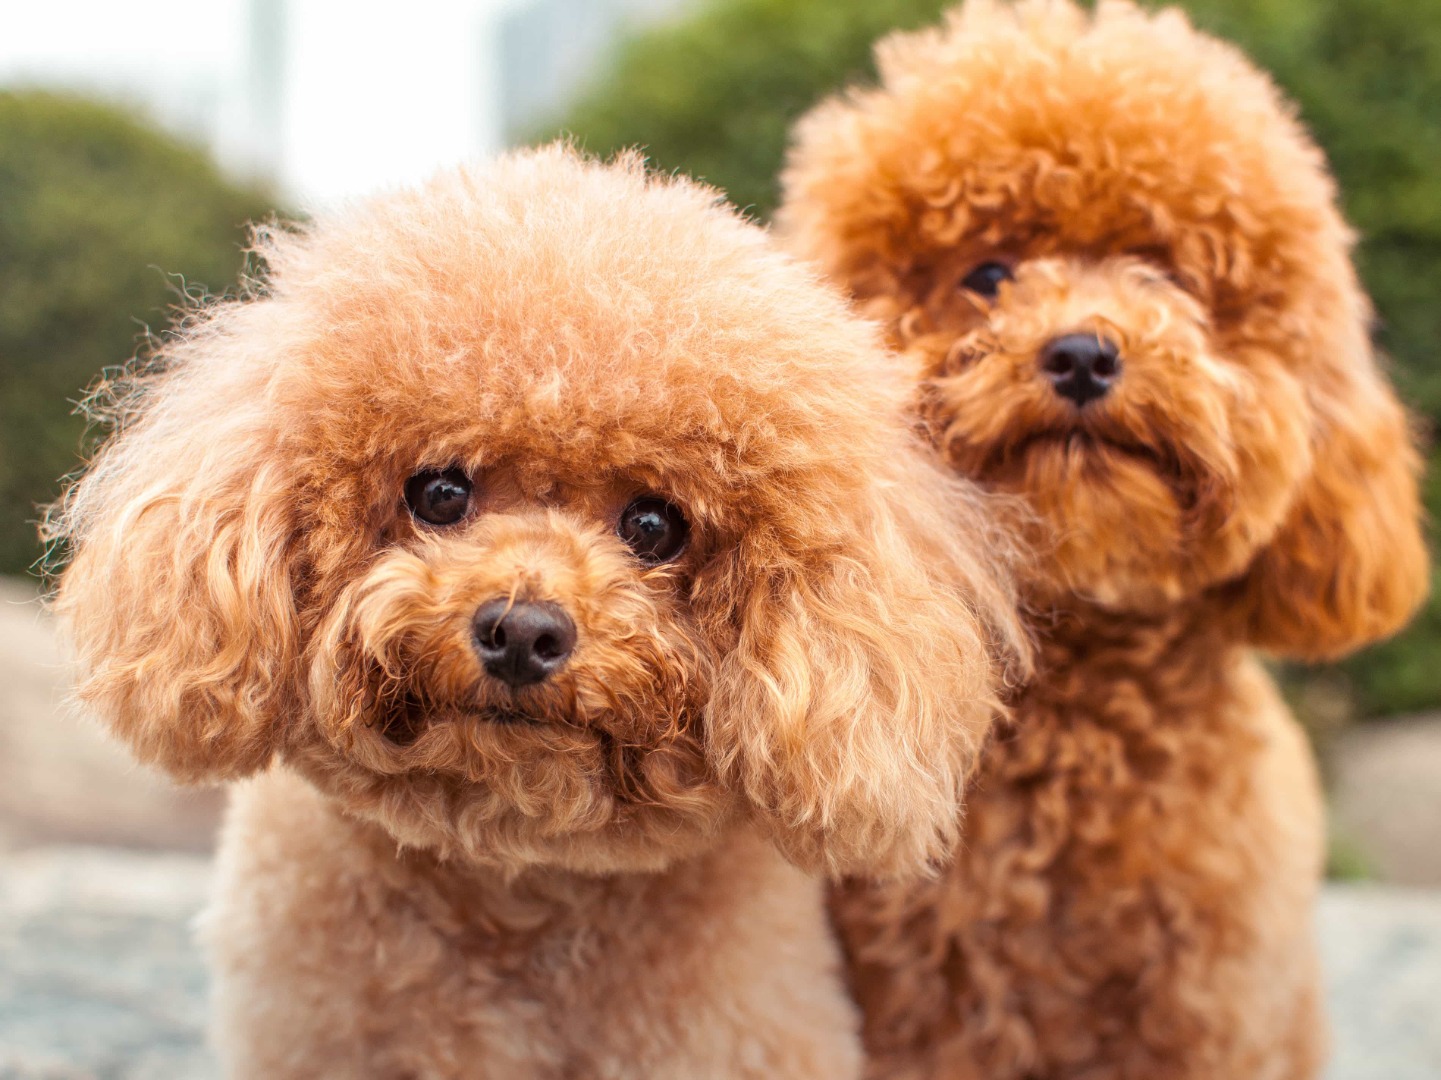 Dünyada ilk: Cins köpek klonlandı